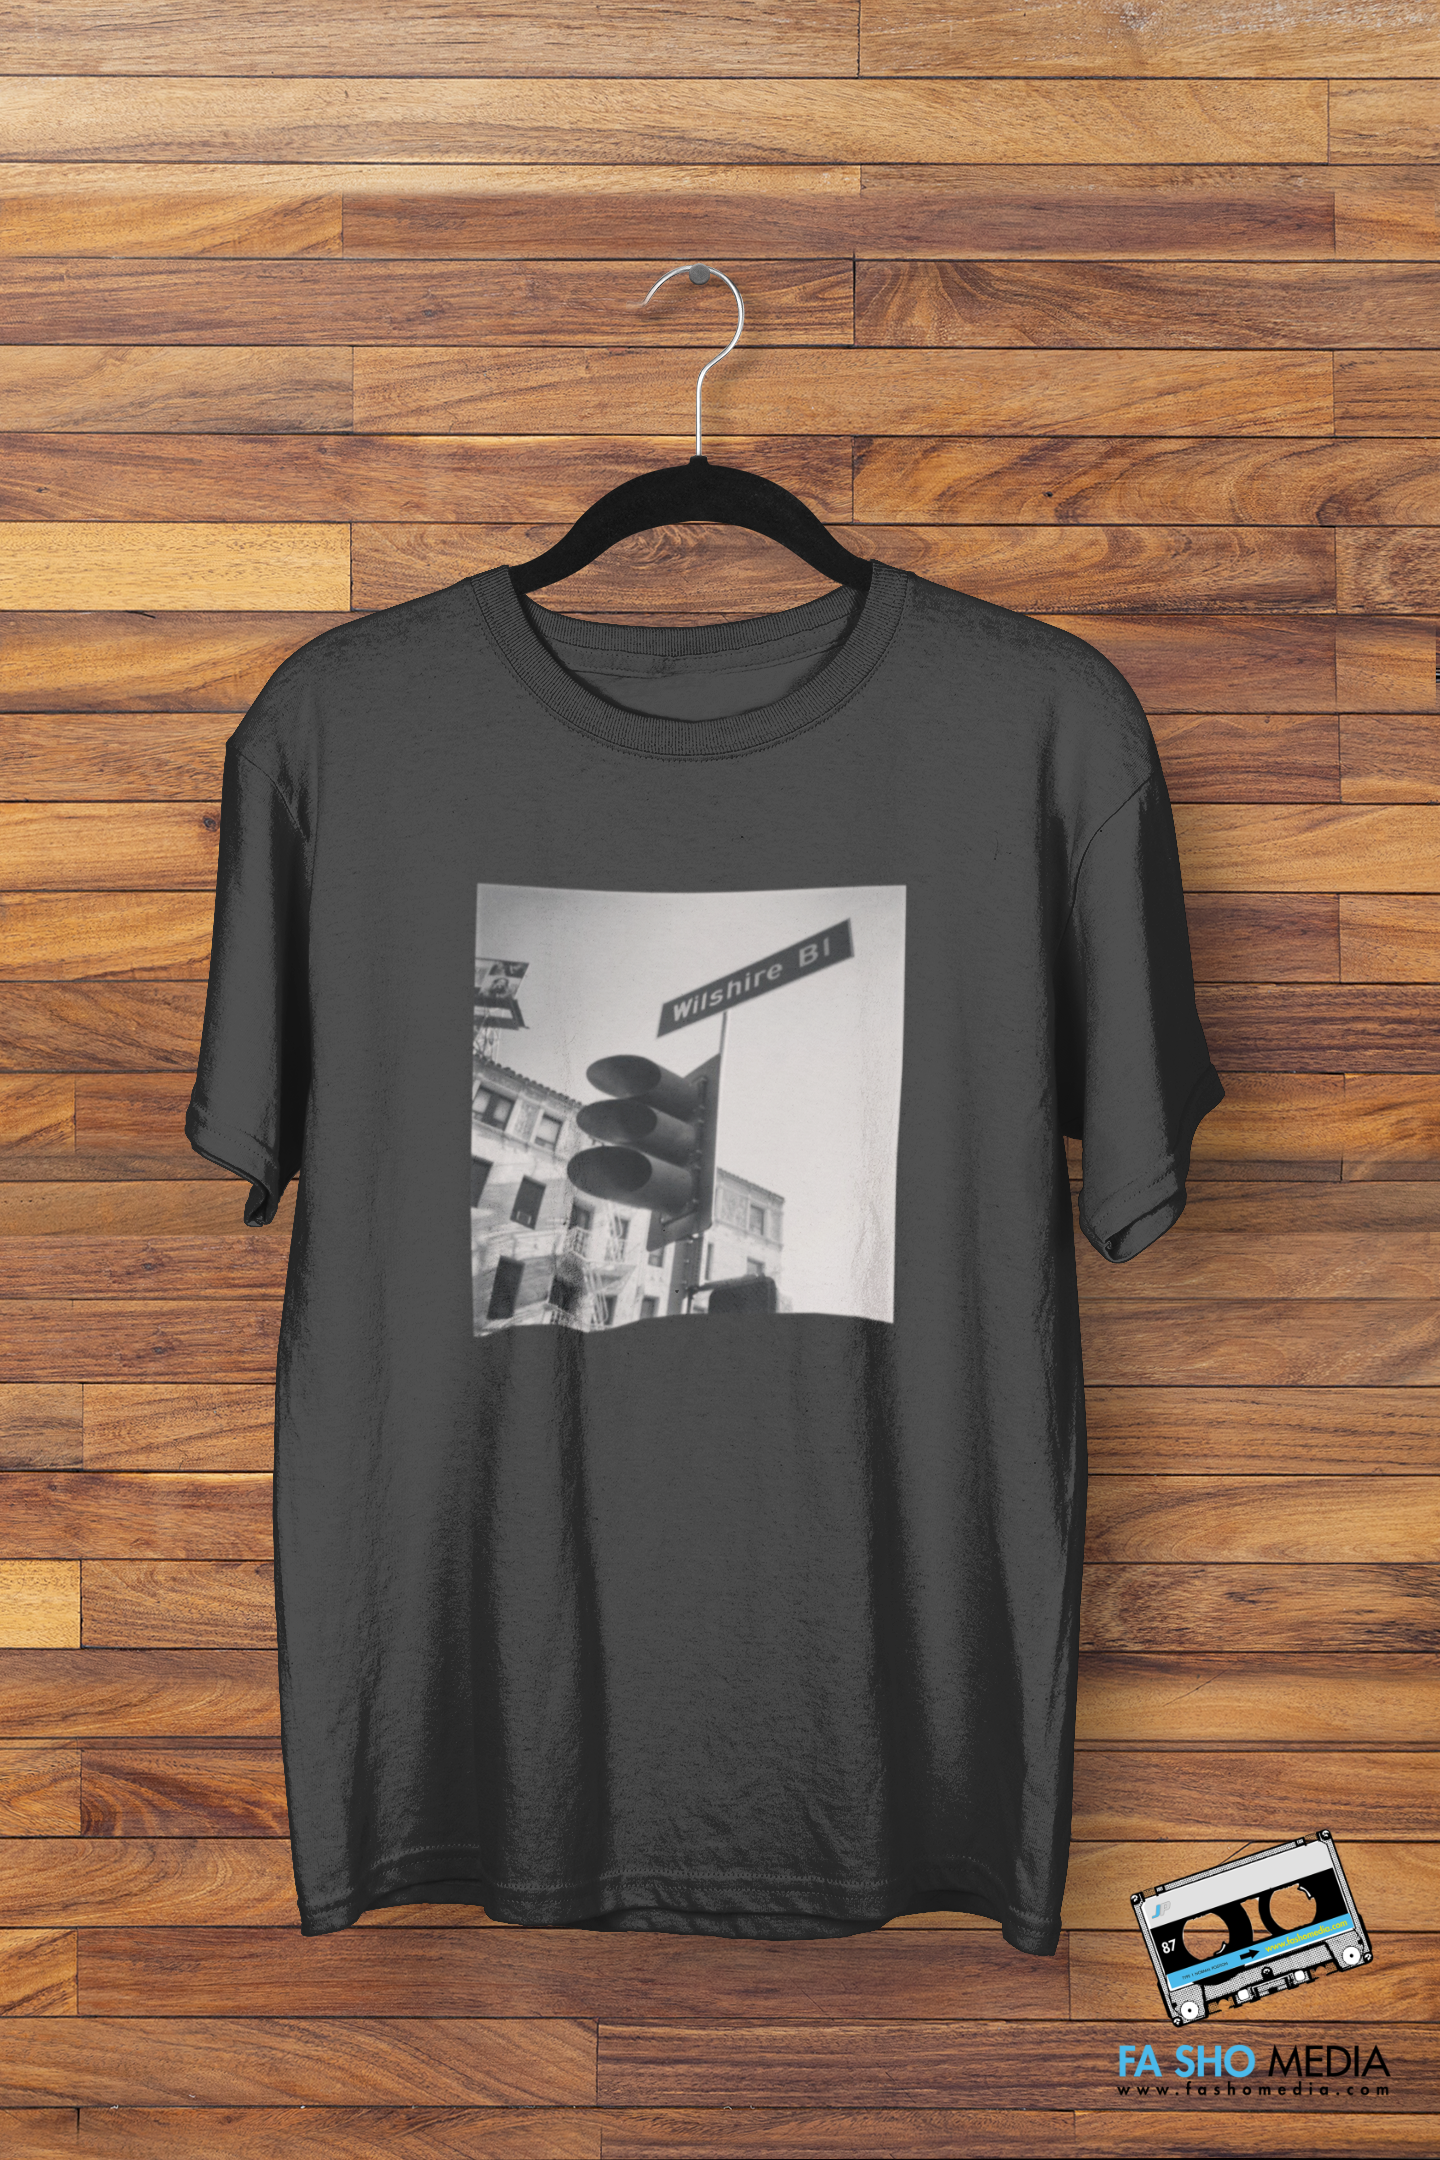 Wilshire Blvd Shirt (Men's)